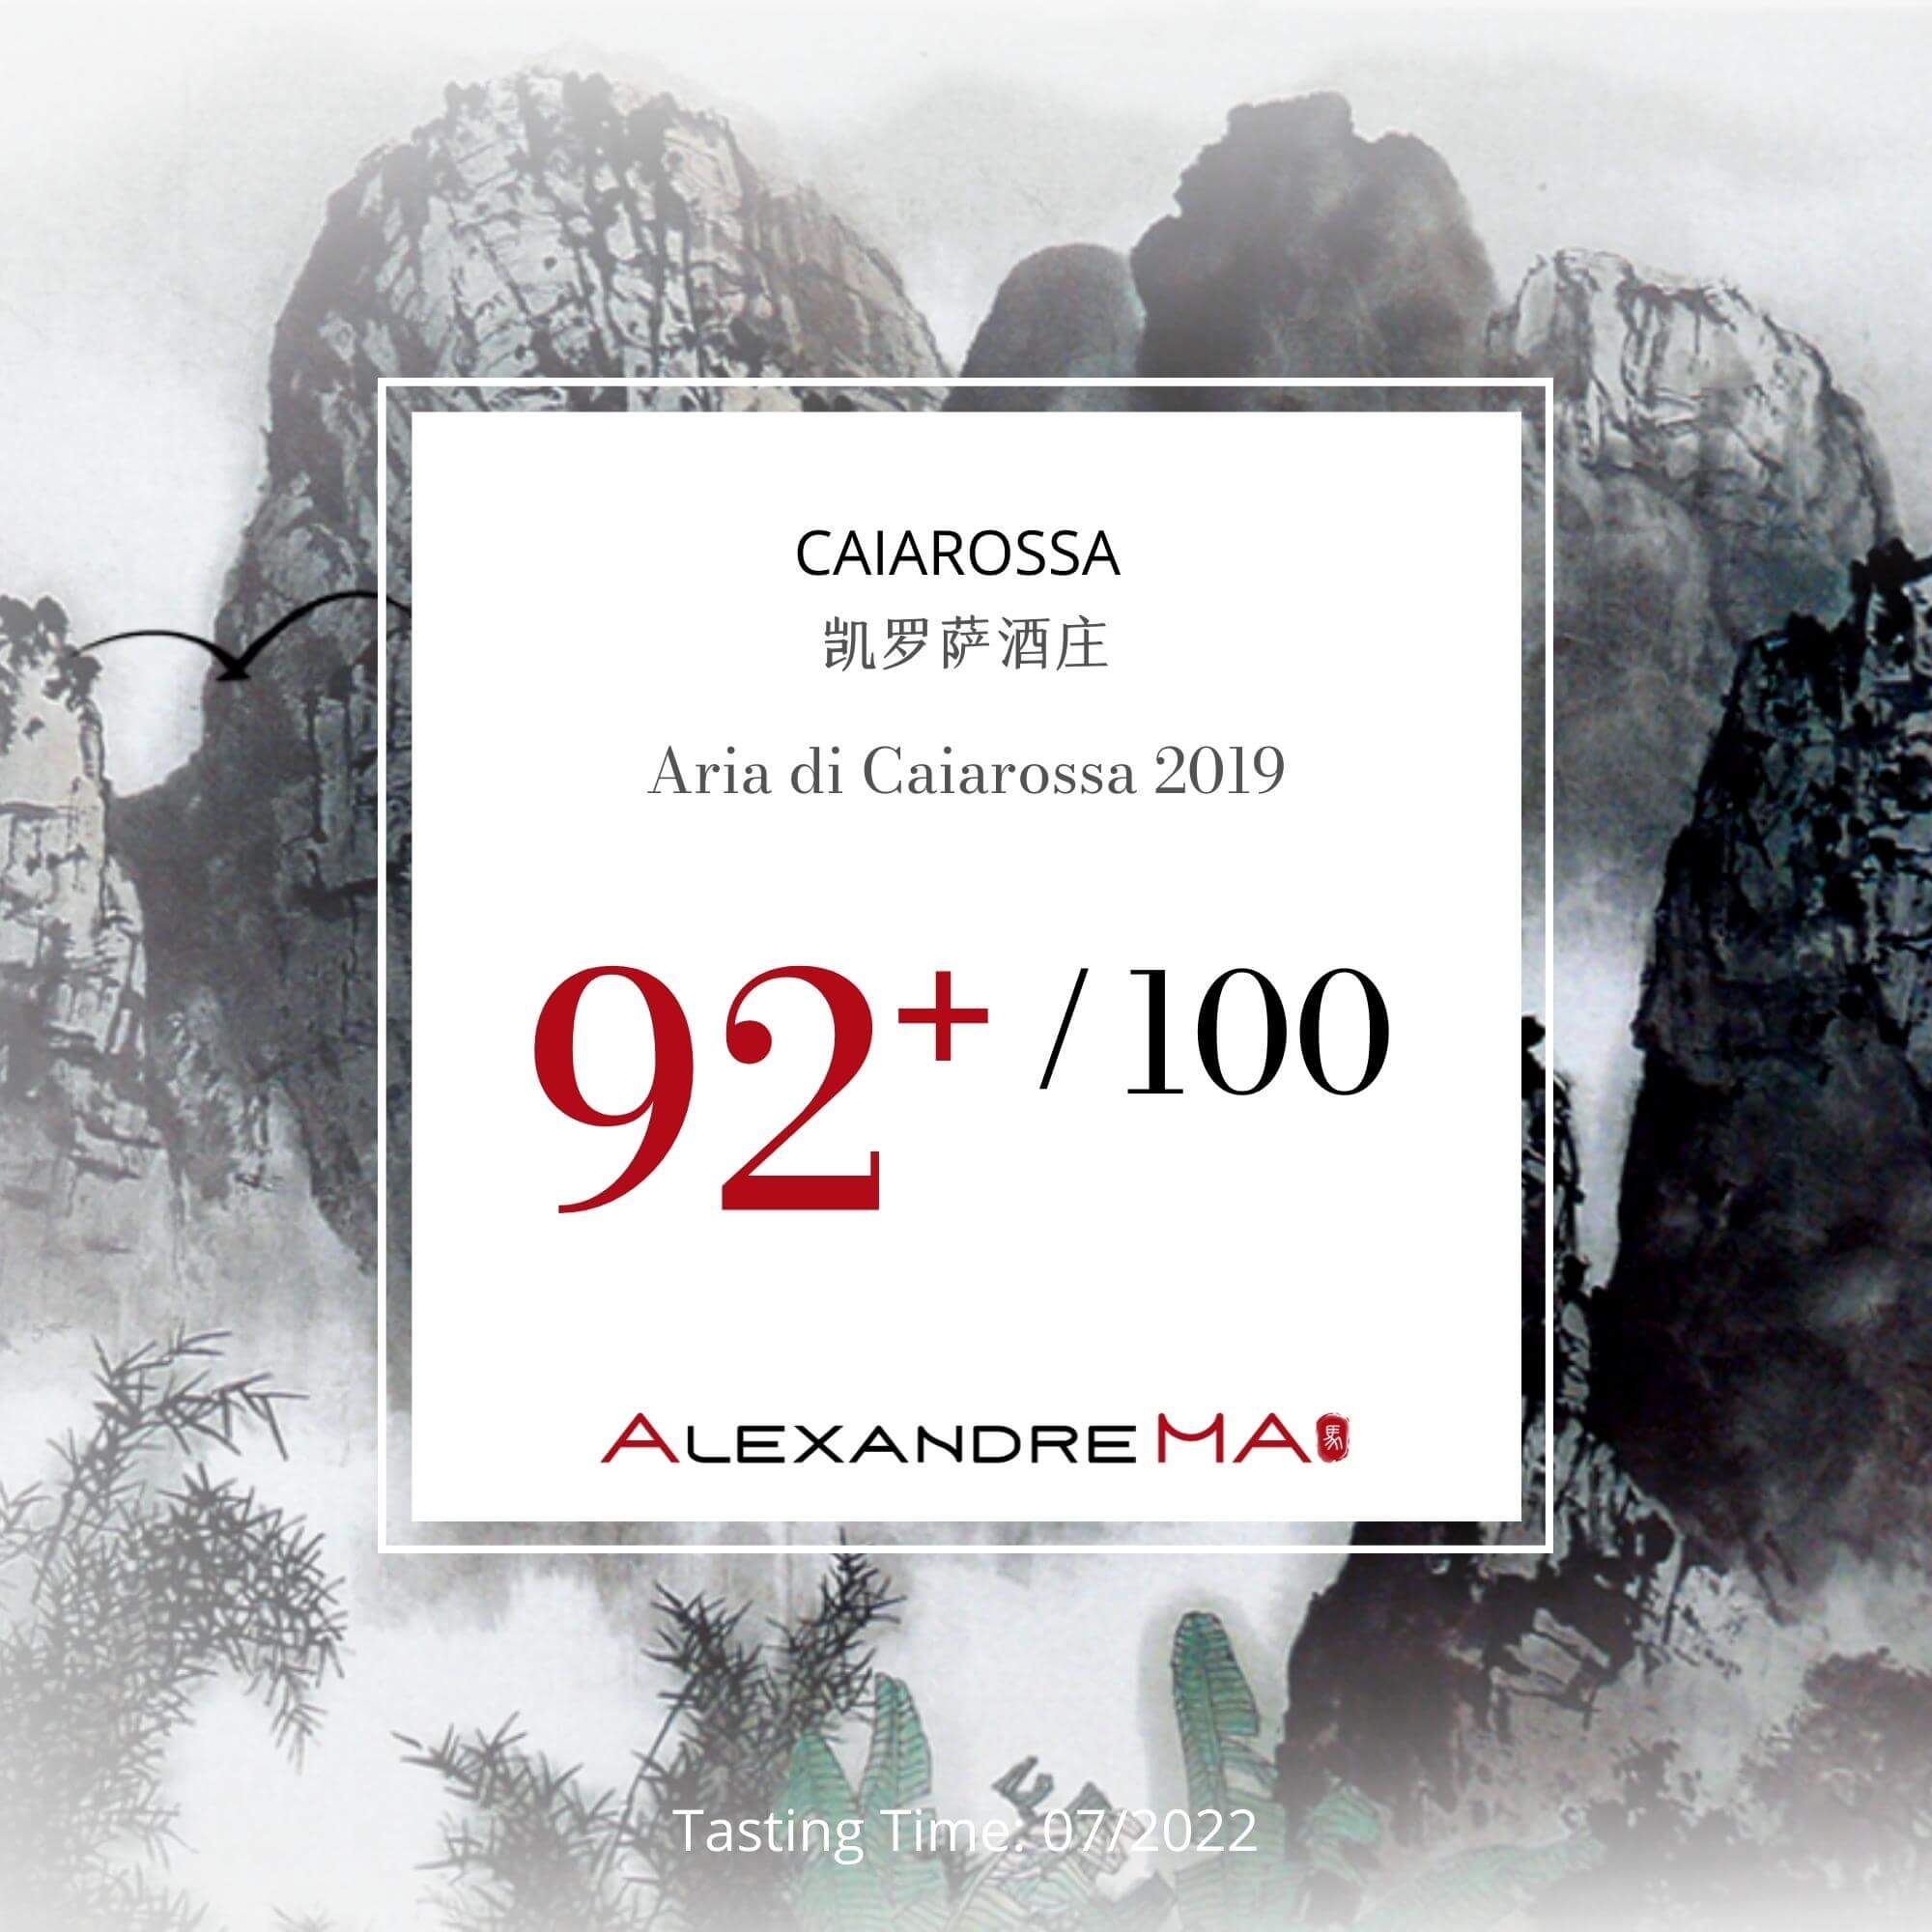 Caiarossa Aria di Caiarossa 2019 凯罗萨酒庄 - Alexandre Ma